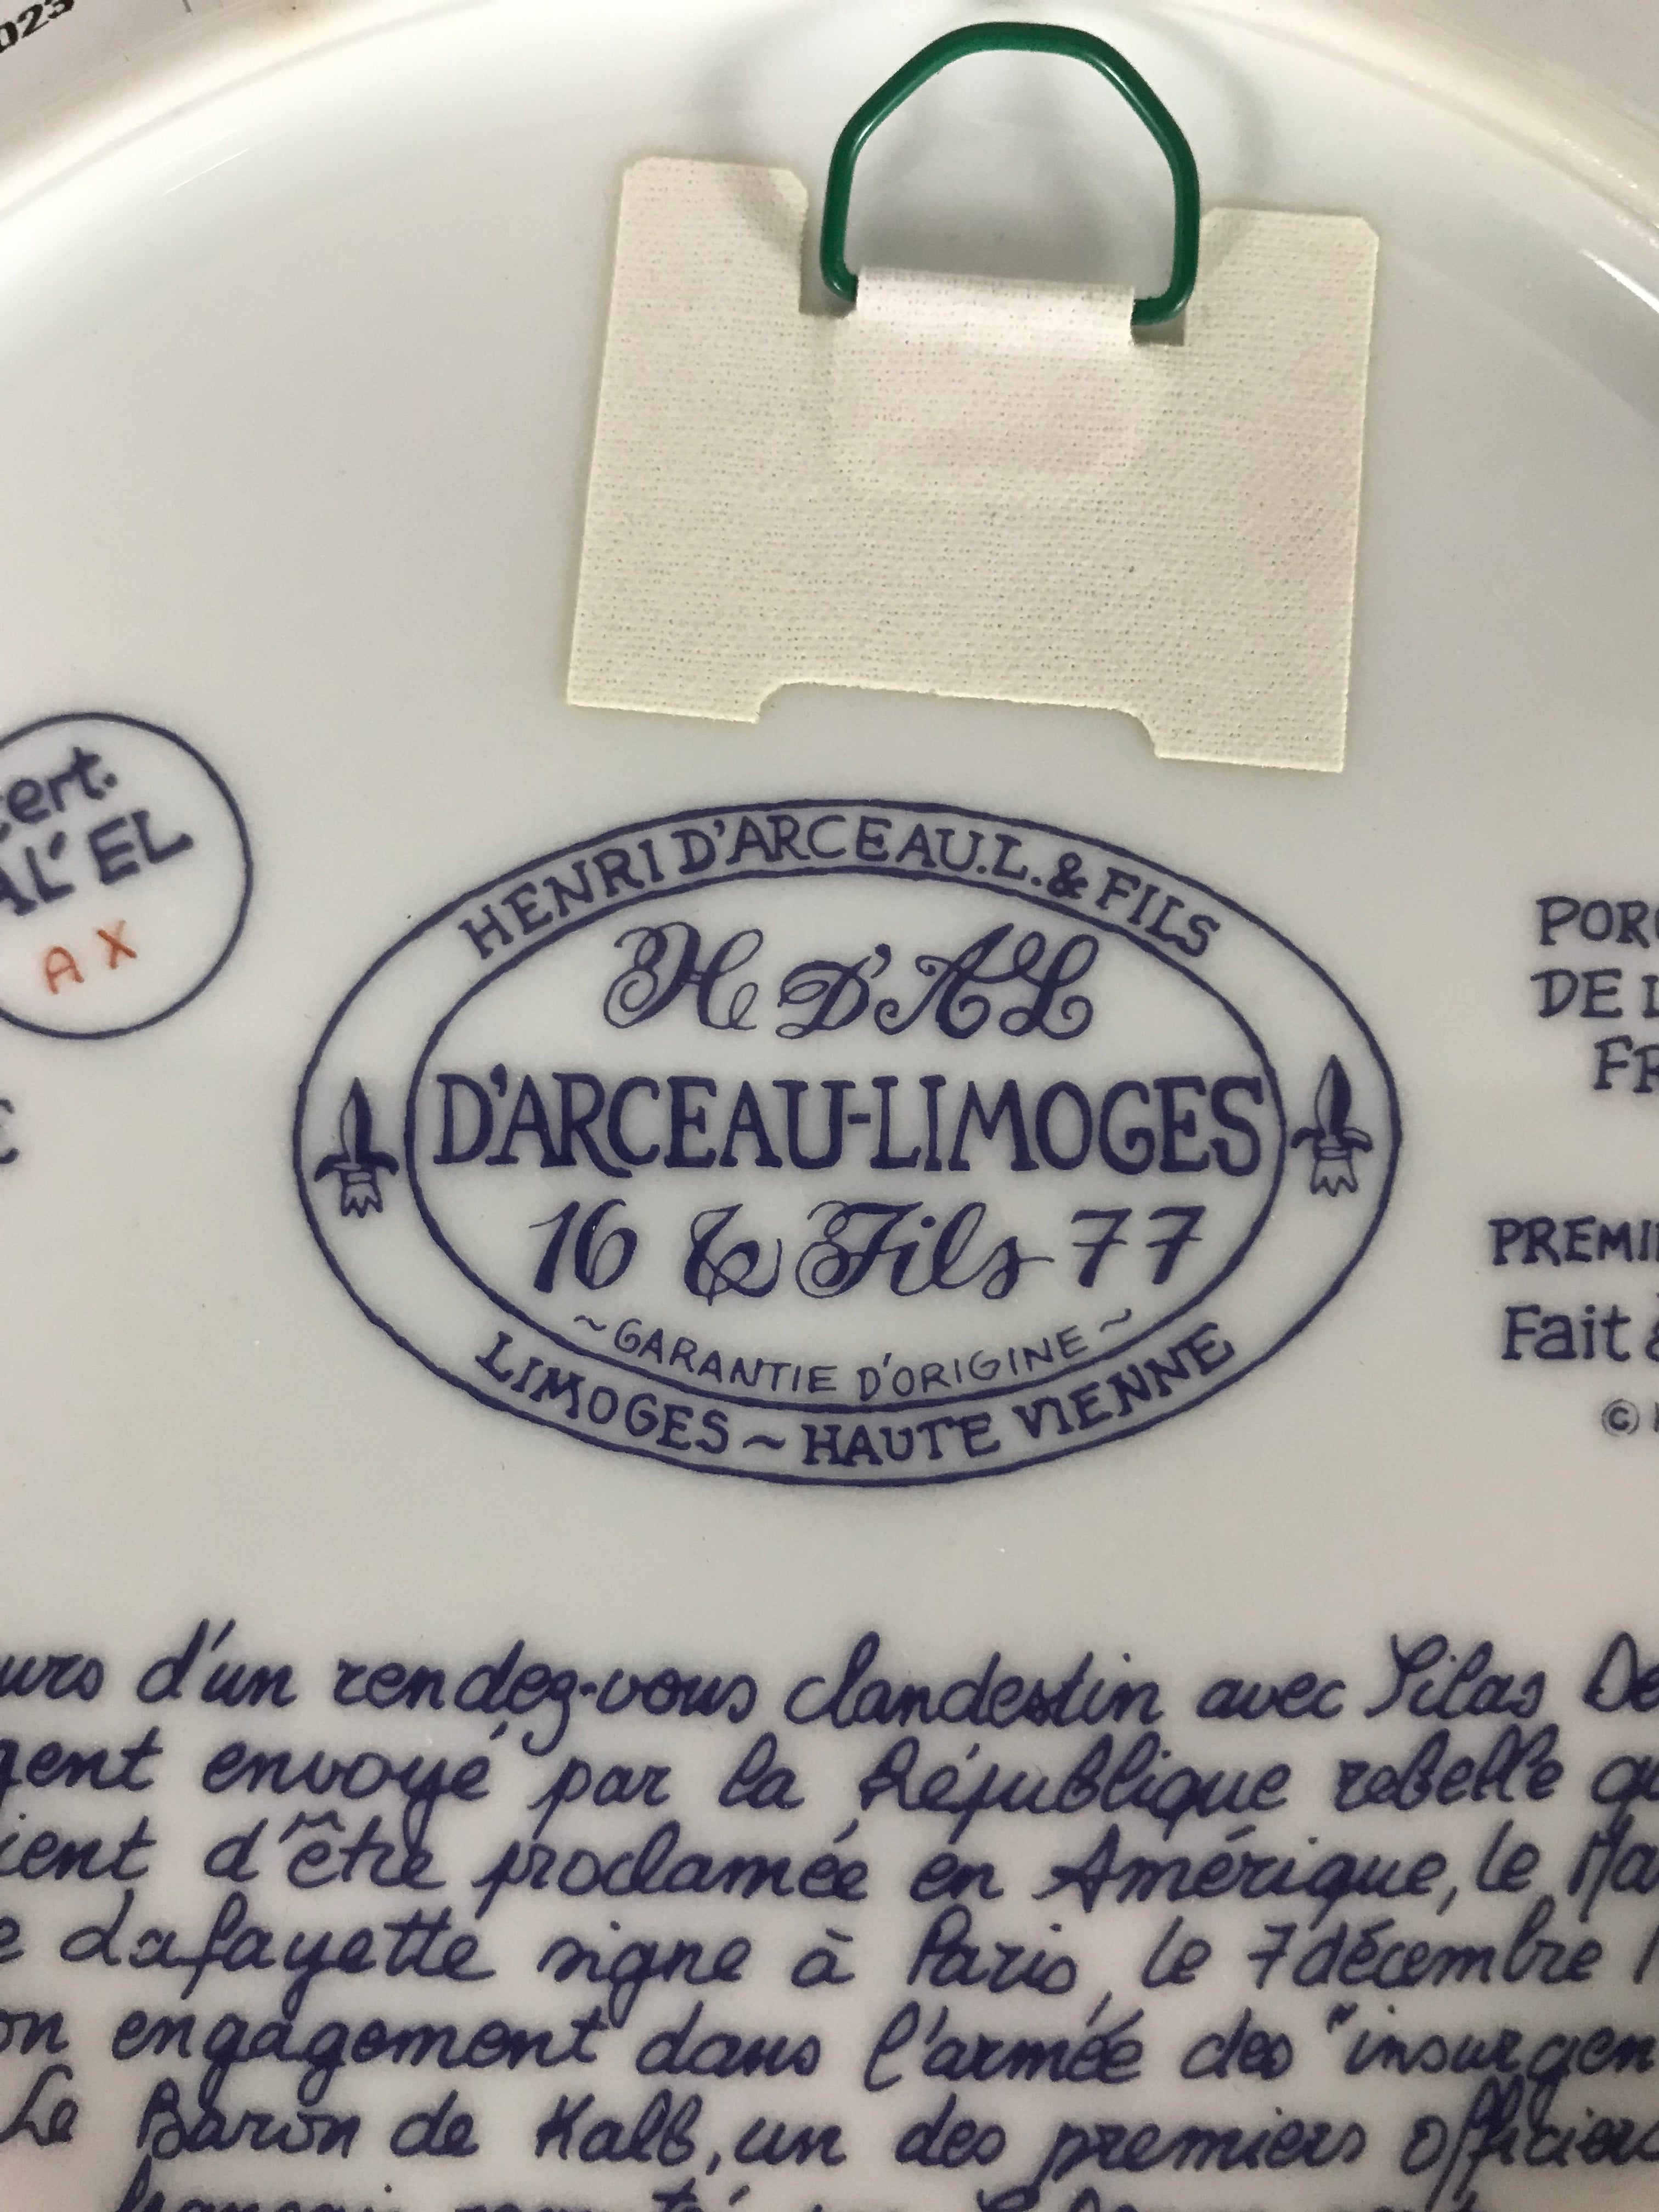 Henri D'Arceau-Limoges "'Le Patrimoine' de Lafayette" Plate